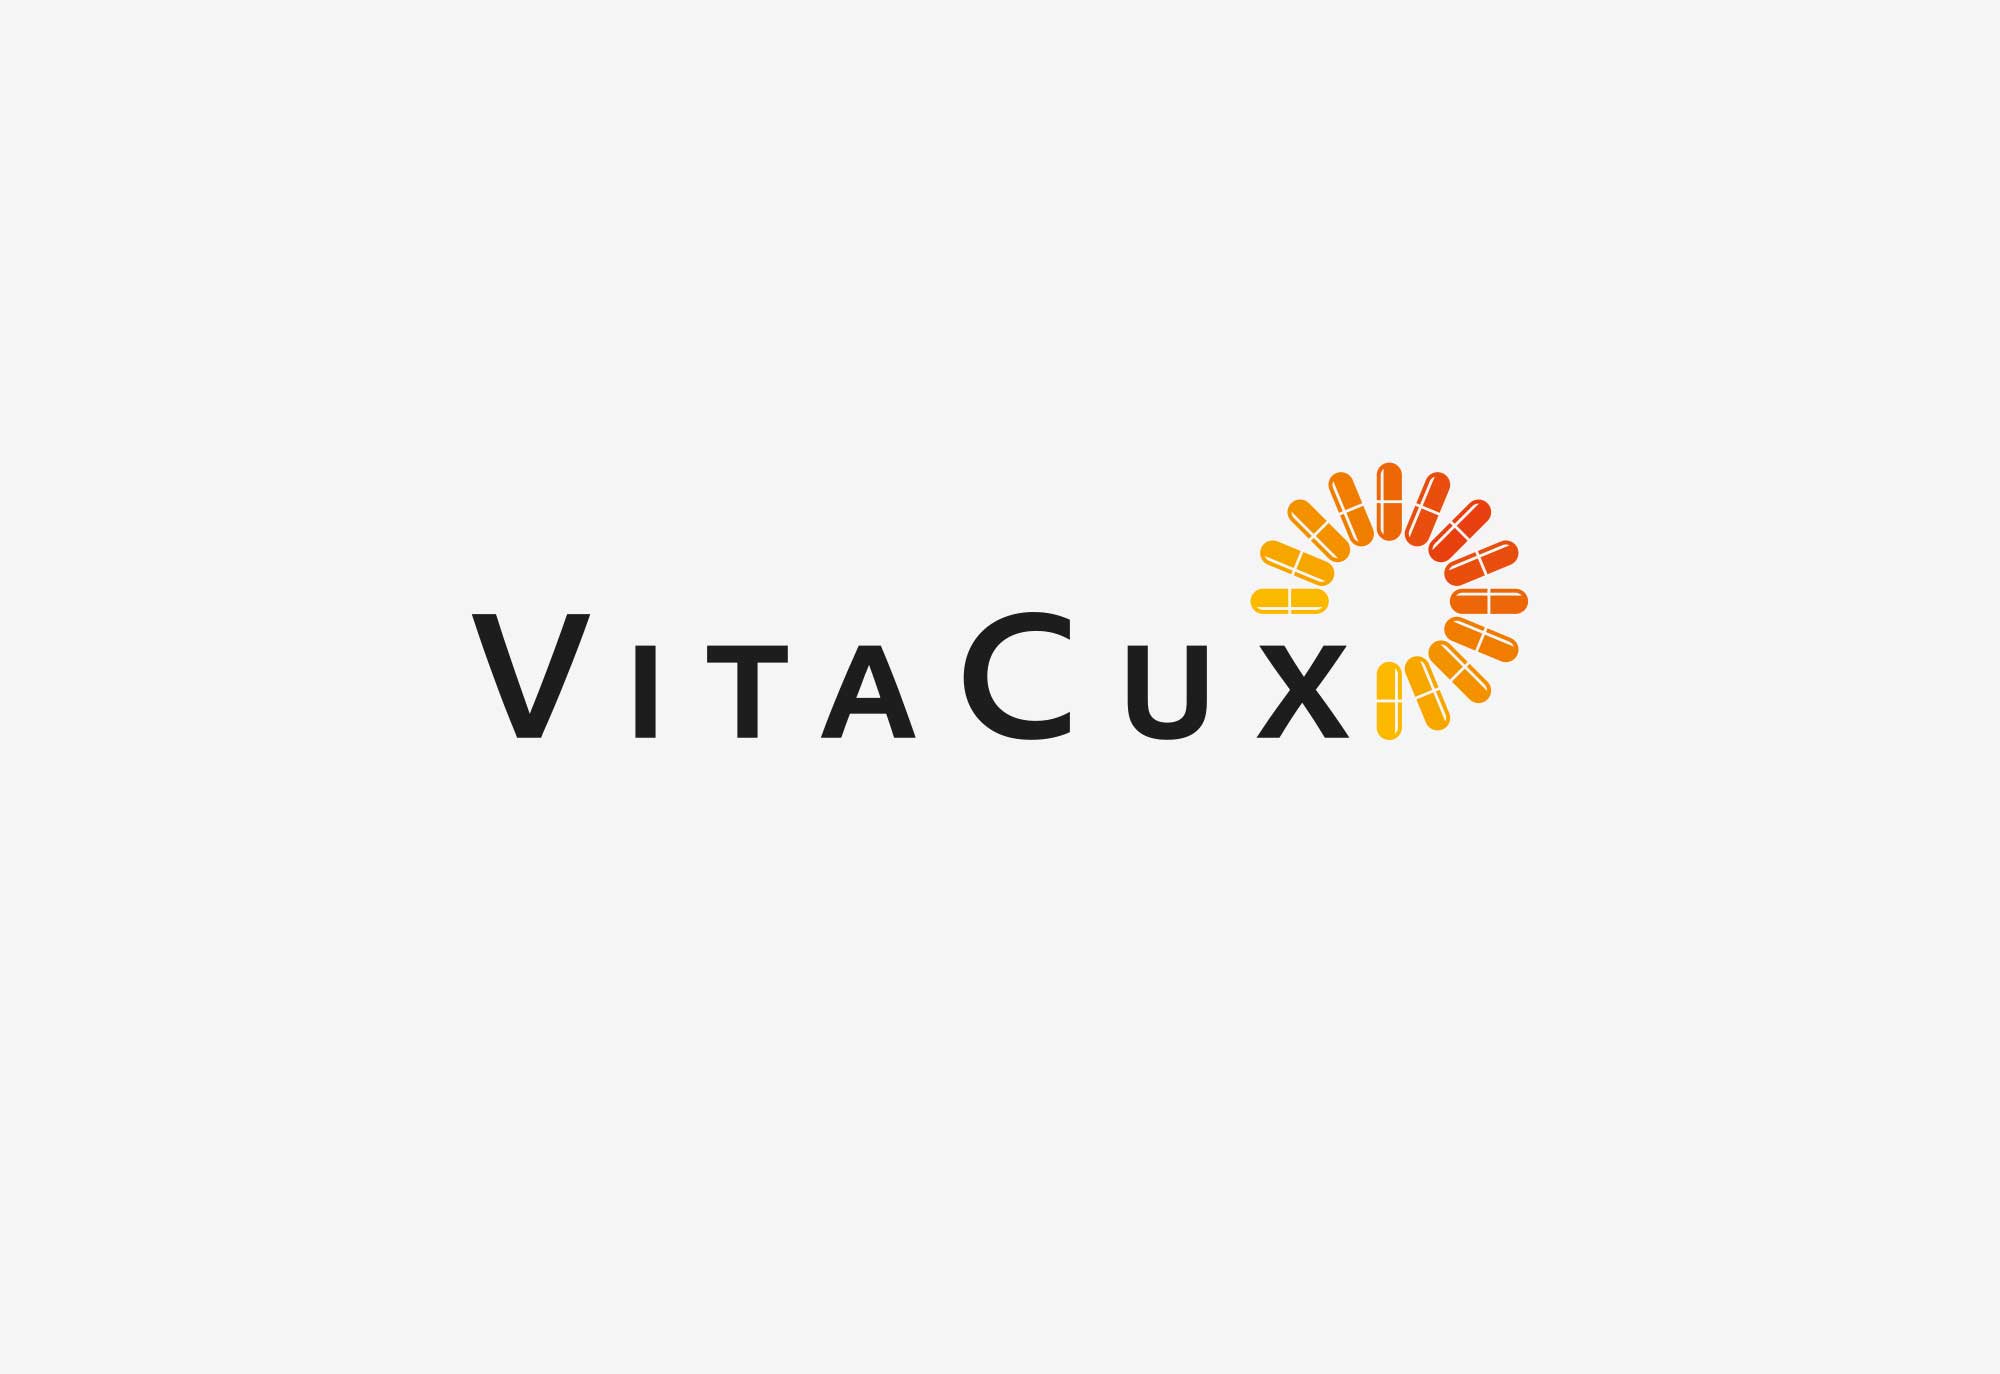 trageser referenzen VitaCux 1